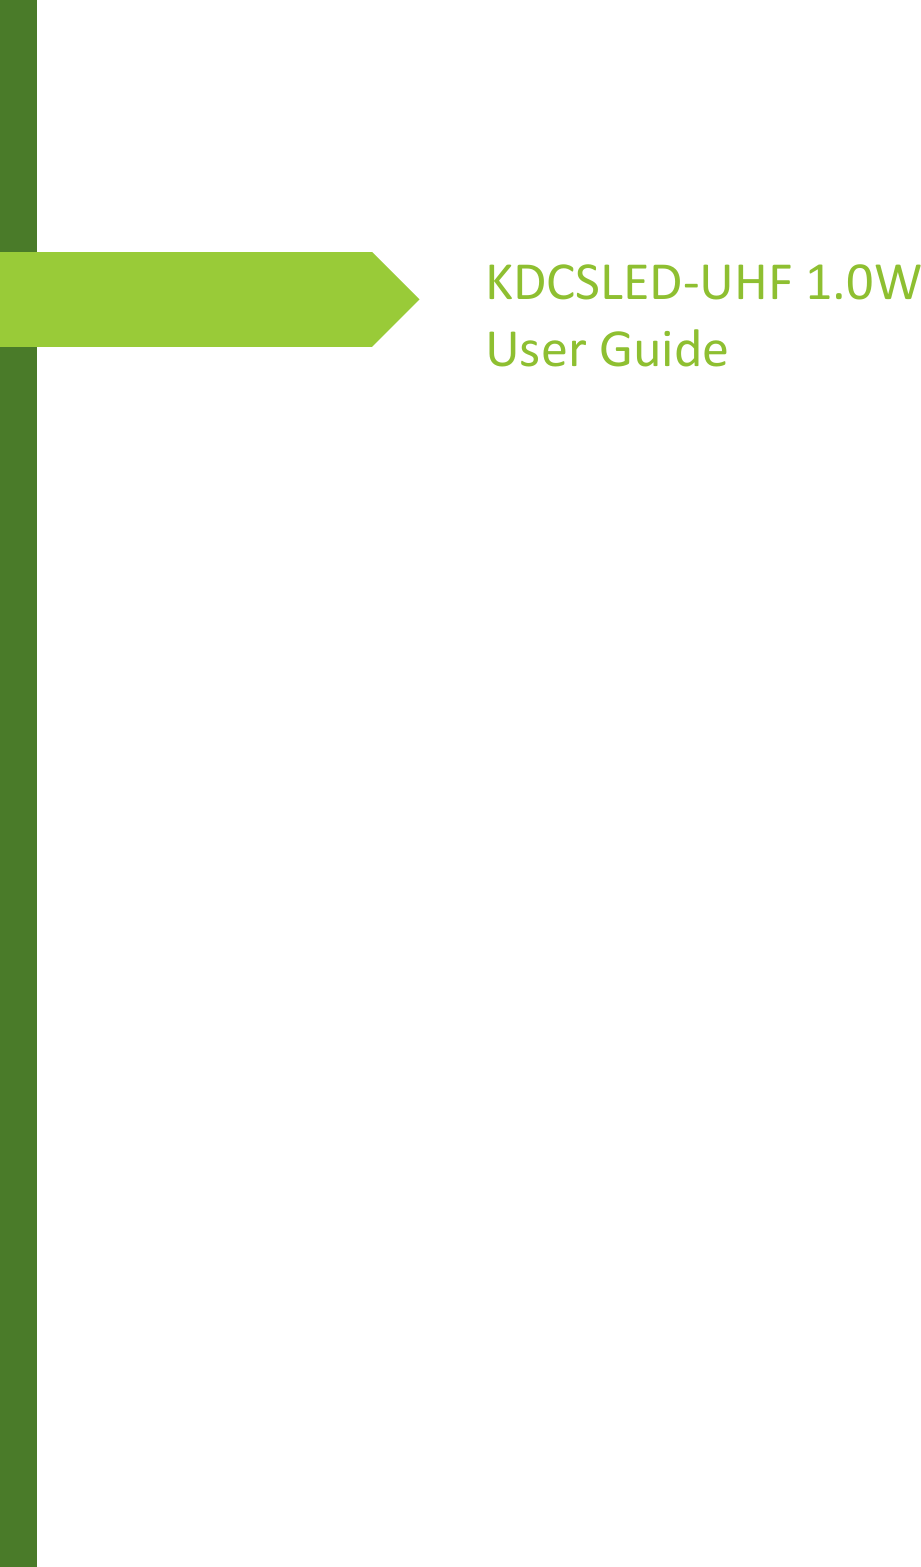        KDCSLED-UHF 1.0W User Guide 